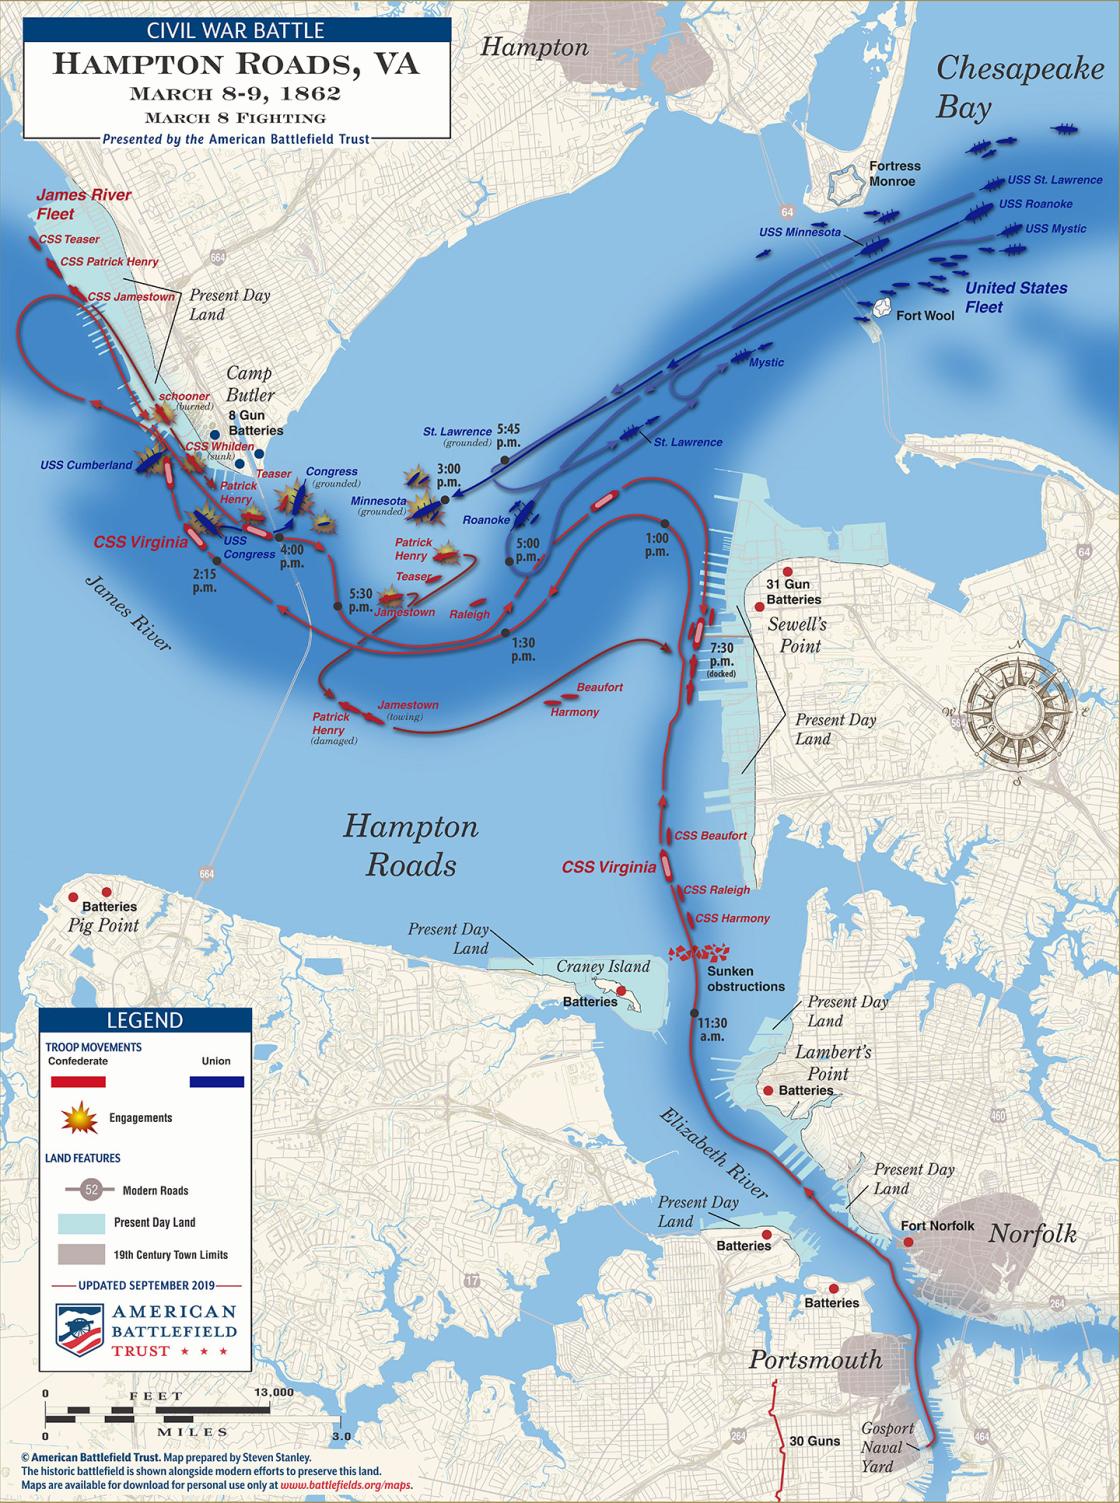 Battle of Hampton Roads Maps American Battlefield Trust